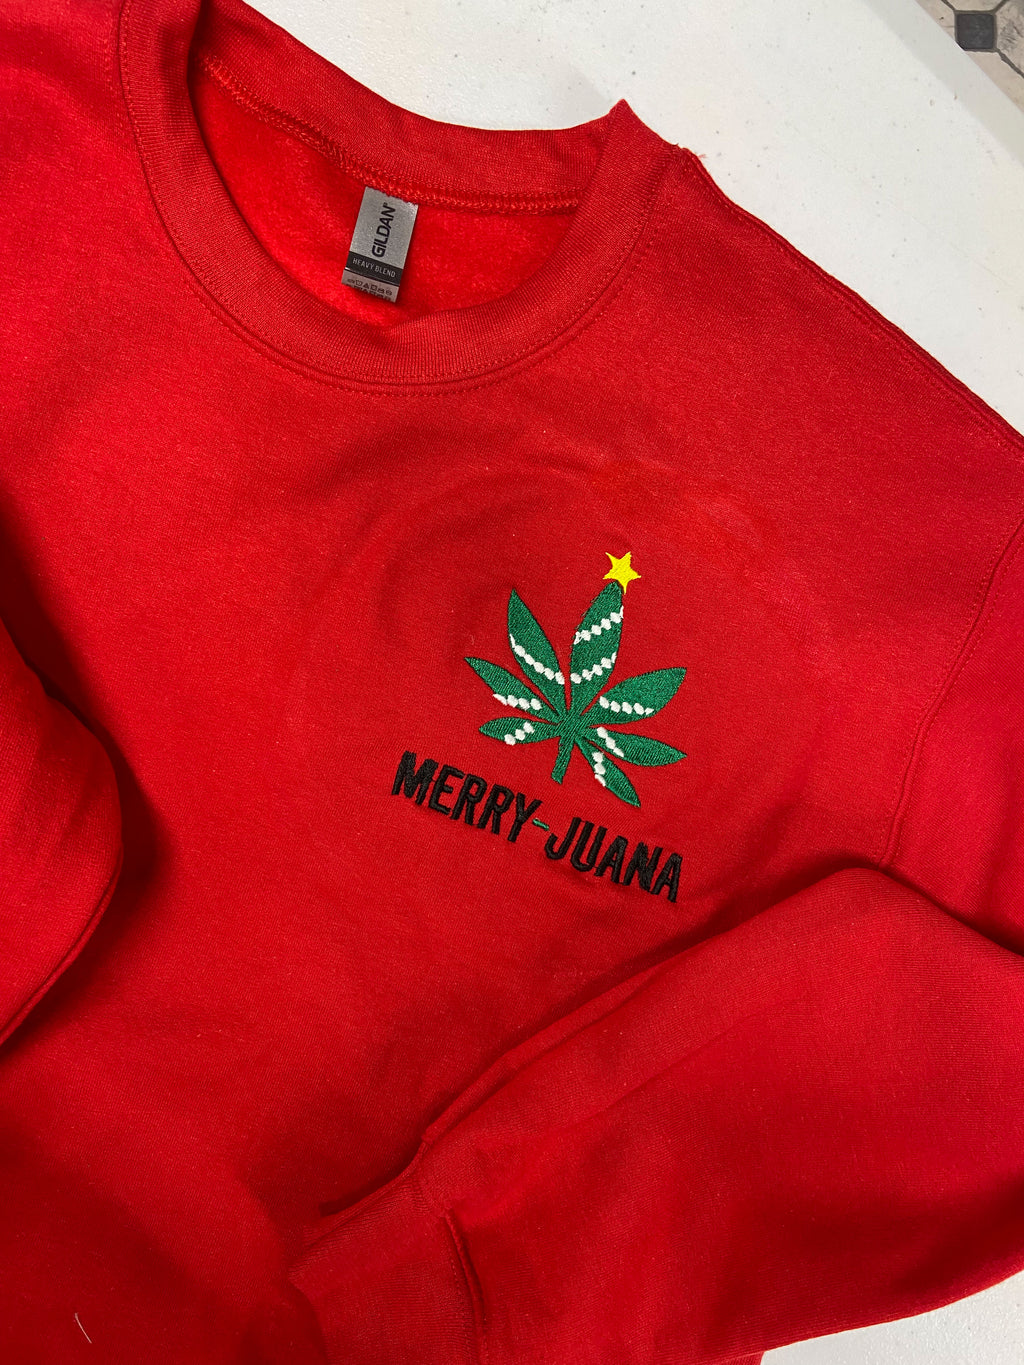 Merry-Juana sweatshirt